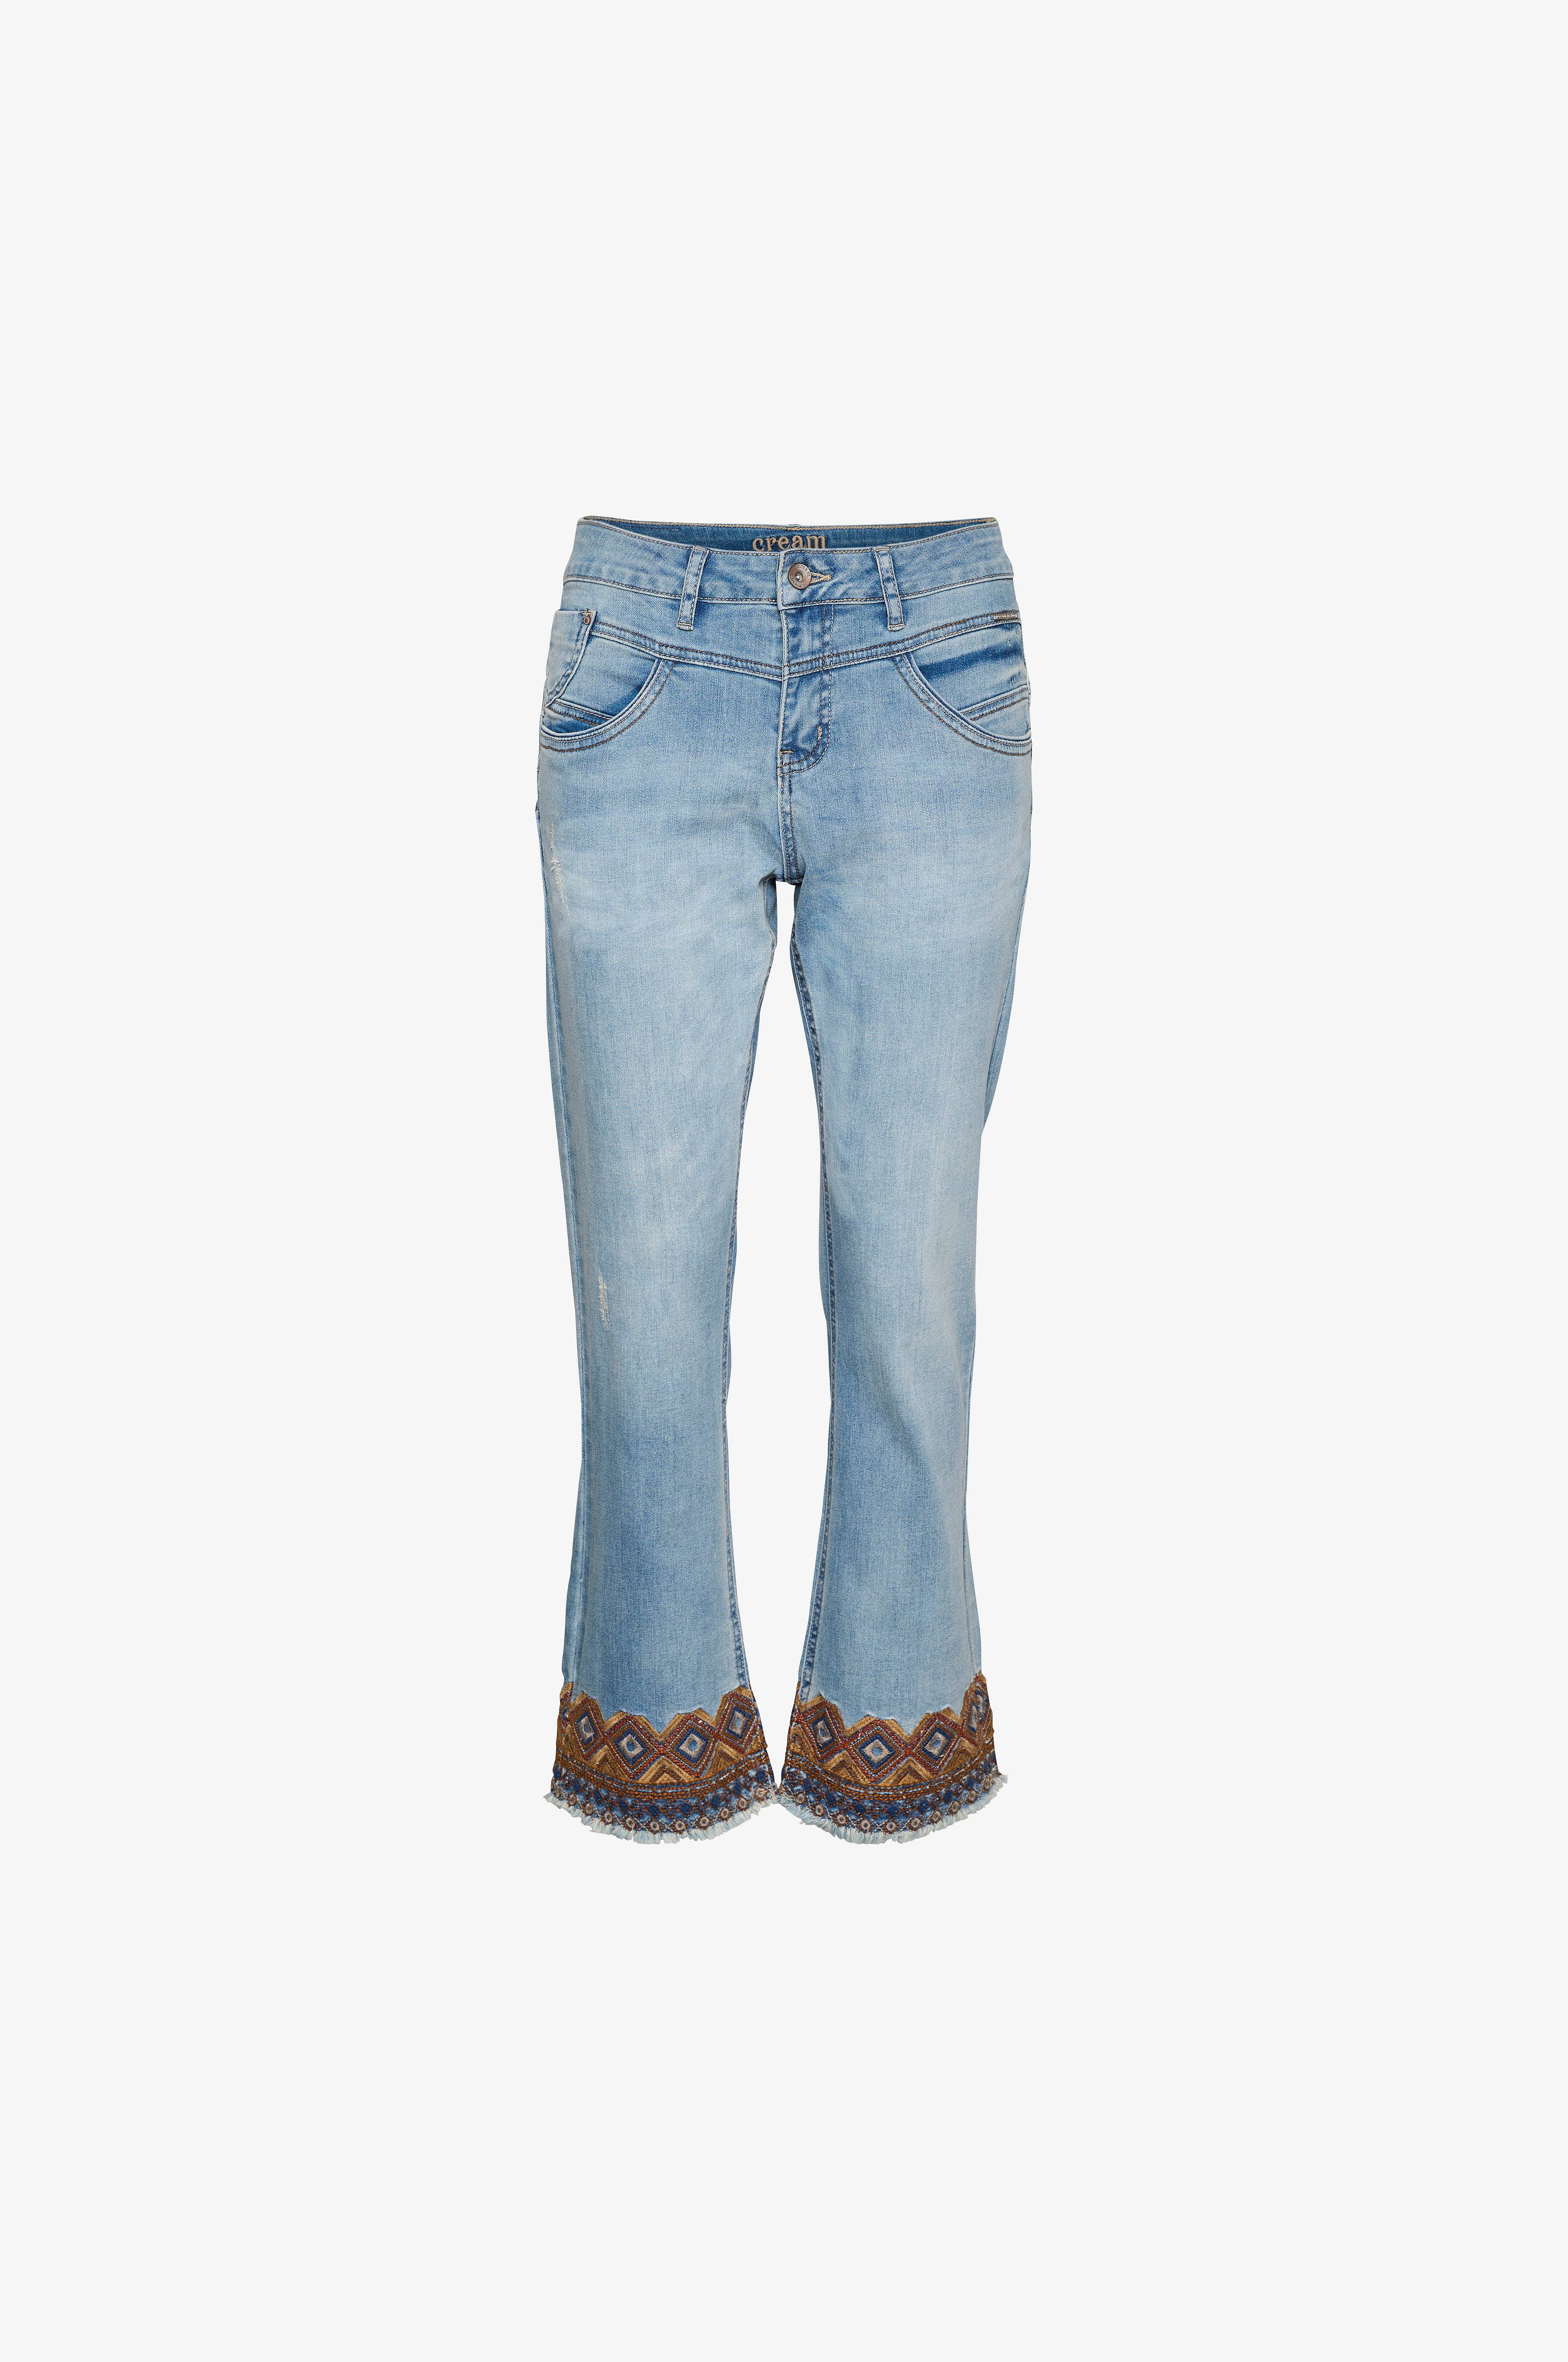 Frigøre Sovereign Grunde Bootcut jeans og flare jeans til damer | Køb online - Ellos.dk